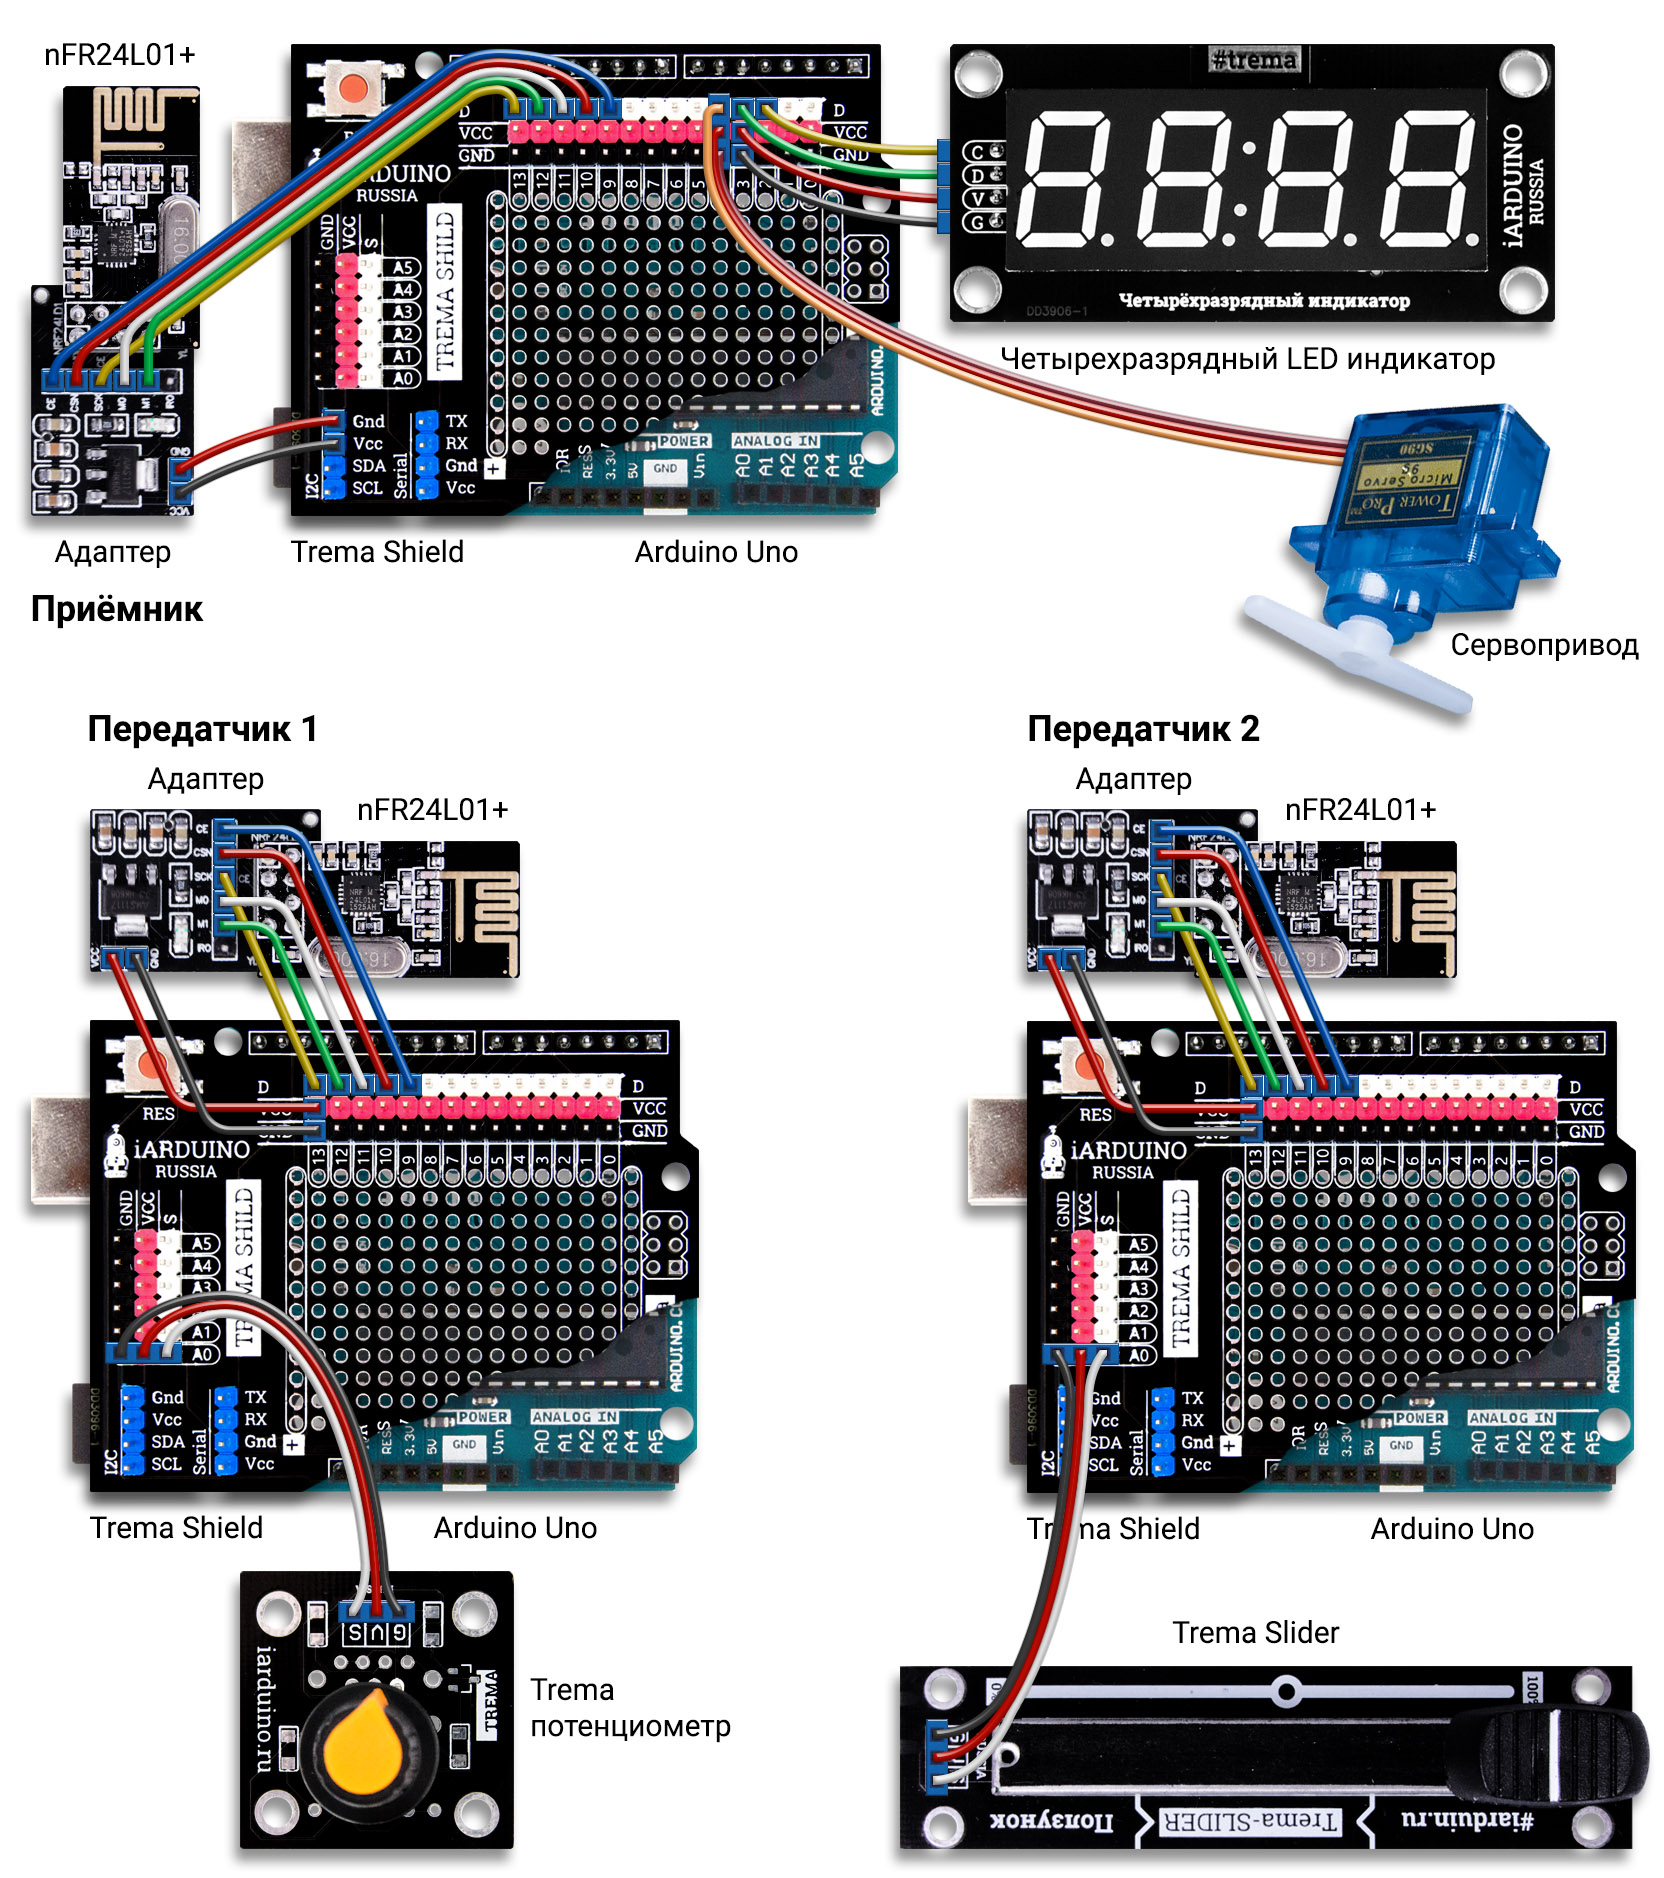 Схема соединения нескольких arduino по радиоканалу